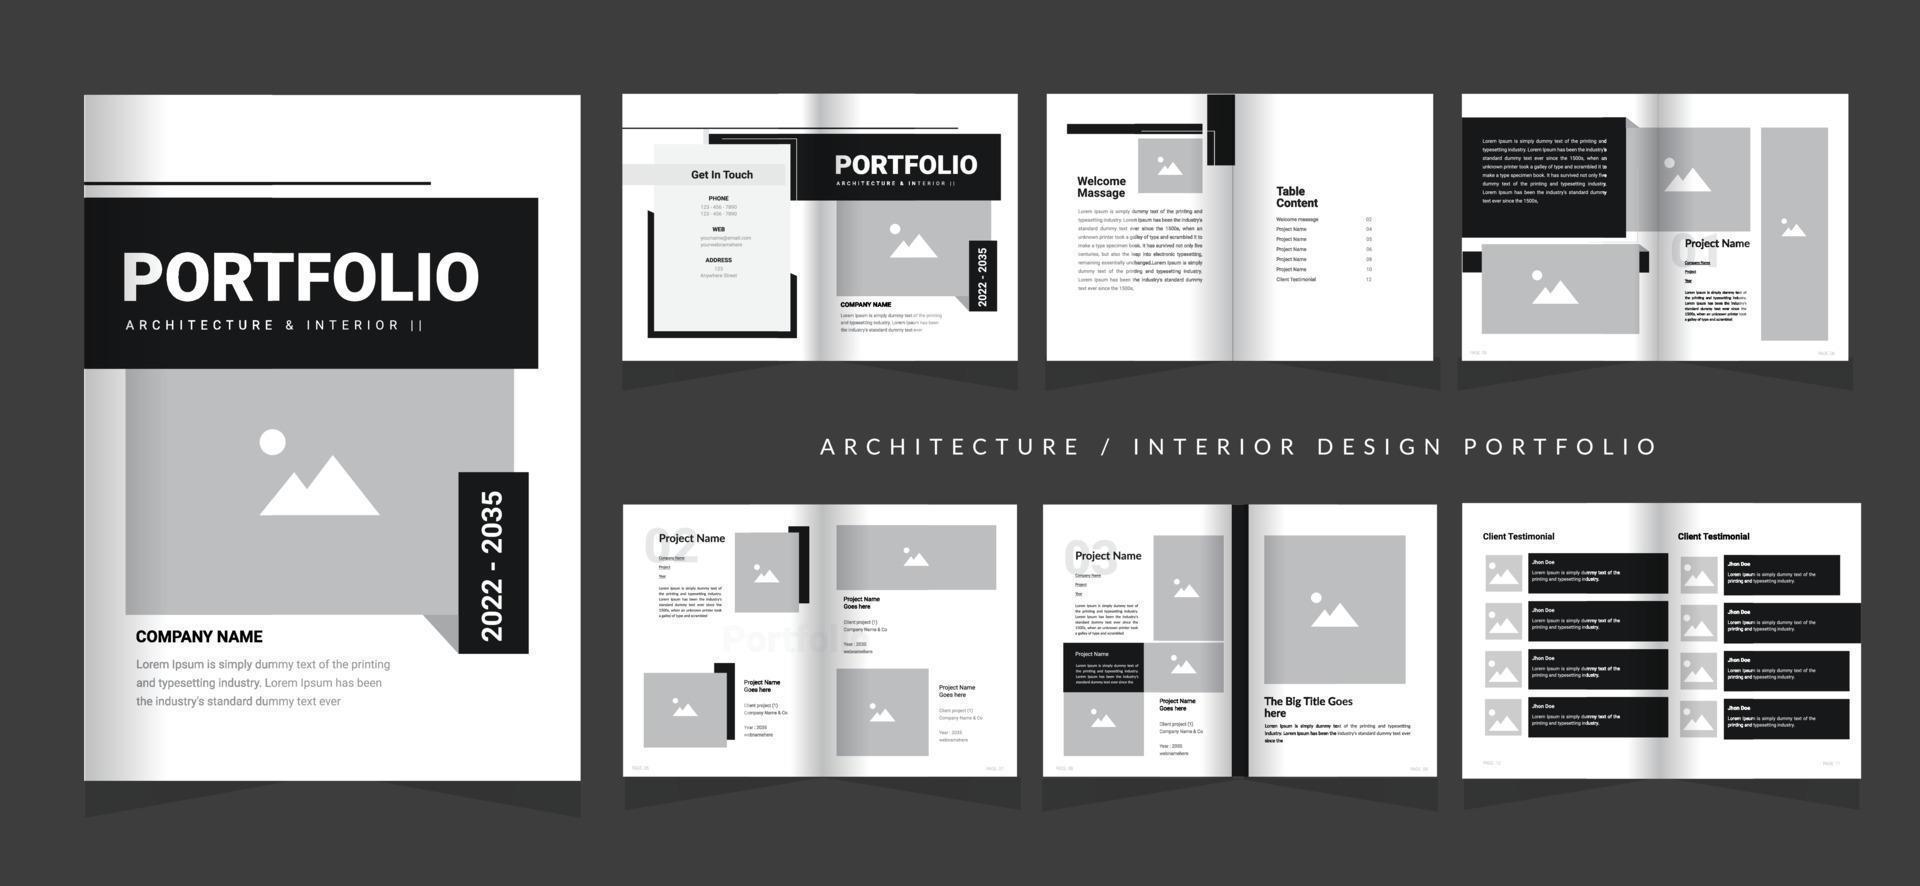 Portfolio Design Architecture Portfolio Interior Portfolio Design, Multipurpose Portfolio Design vector